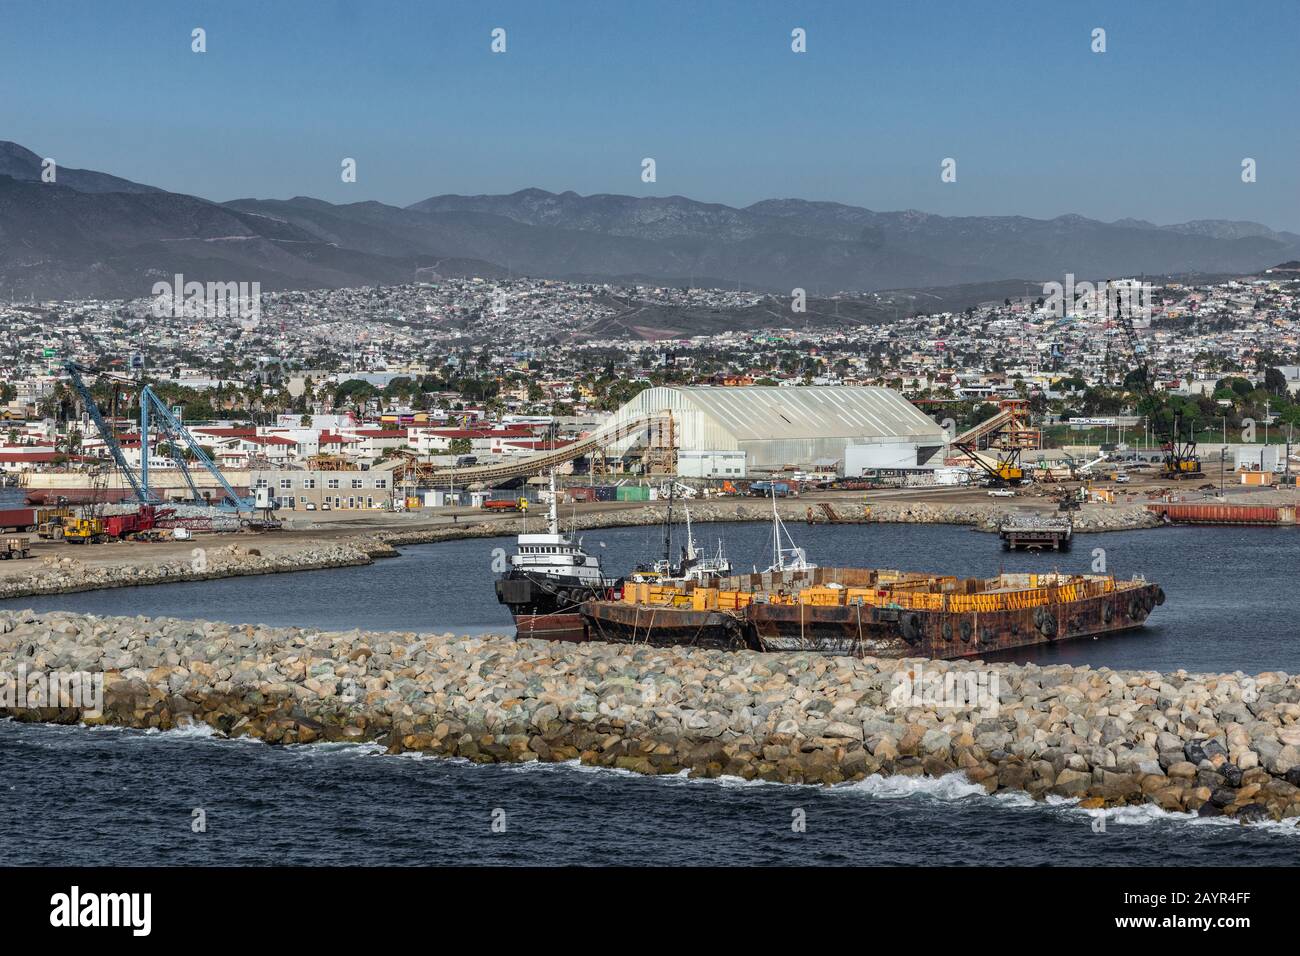 Ensenada, Mexique - 17 janvier 2012: Grand bâtiment blanc exploitant le déchargement en vrac et la charge de minéraux par le biais de la ceinture de transport sur les navires. Barges devant le tourbillon Banque D'Images